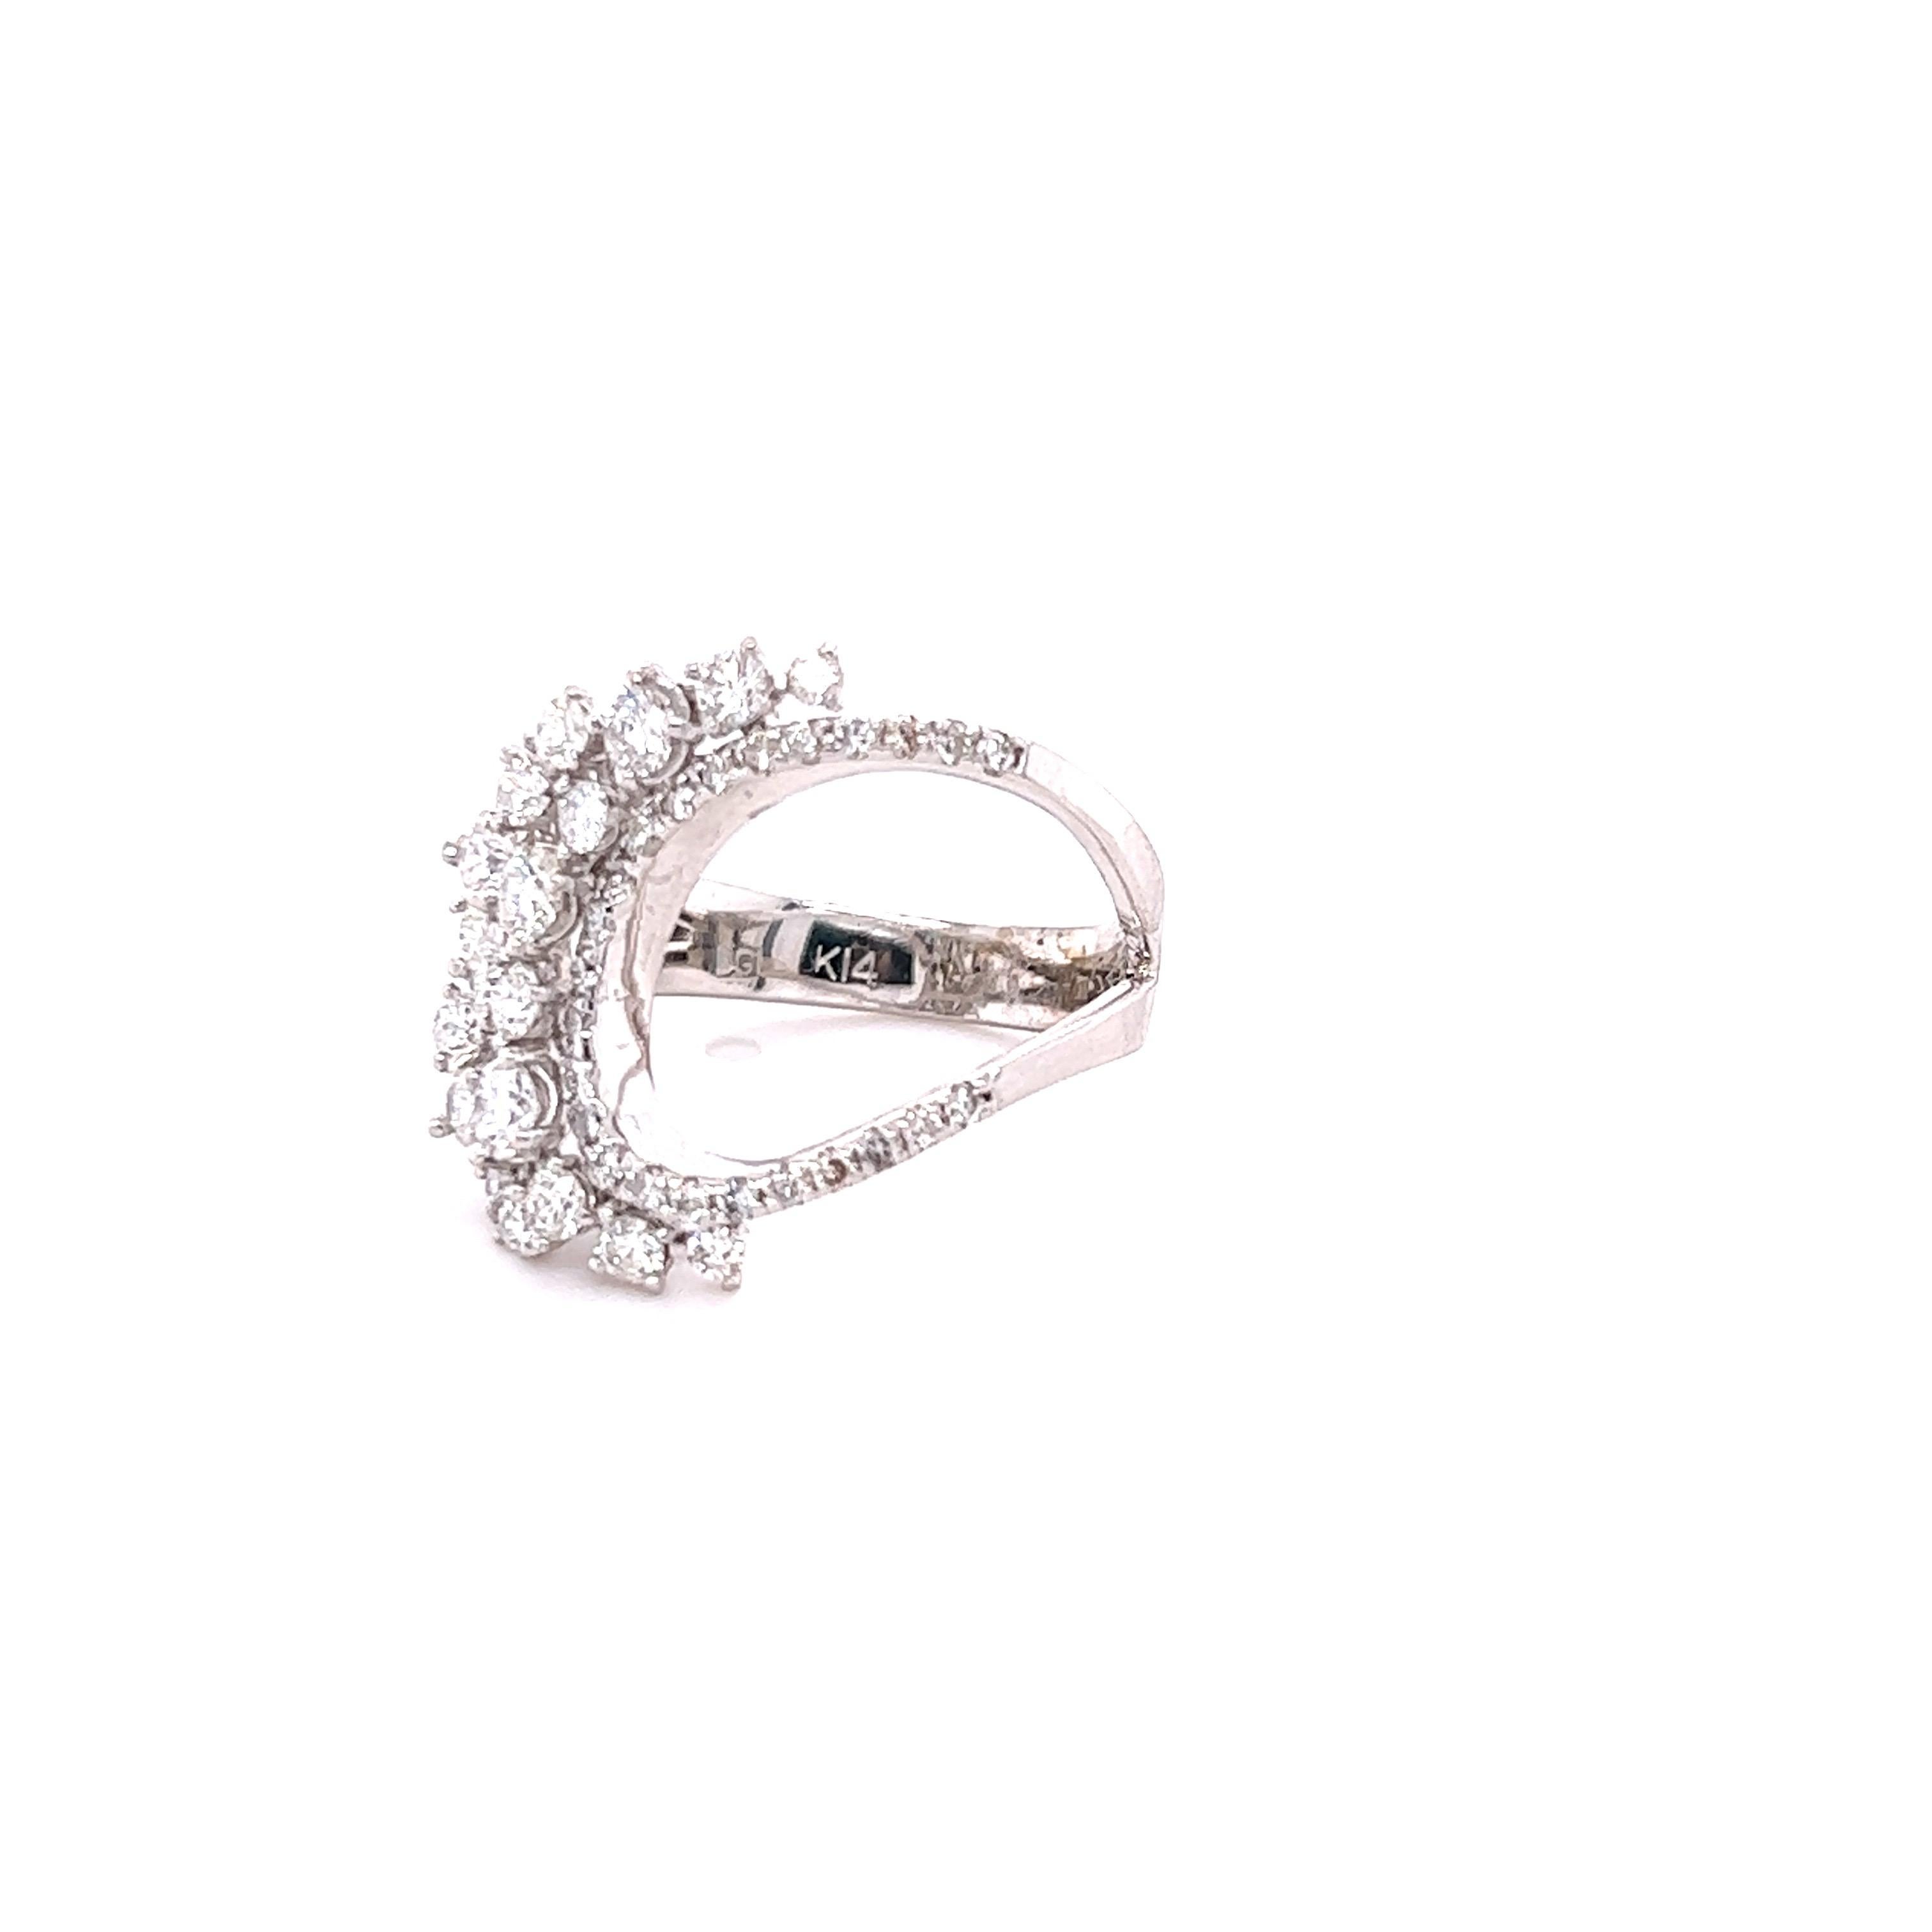 Dieser Ring hat 43 Rundschliff-Diamanten, die 1,32 Karat wiegen und hat eine Klarheit und Farbe von SI-F.  
Er ist aus 14 Karat Weißgold gefertigt und hat ein ungefähres Gewicht von 5,3 Gramm. 

Der Ring hat die Größe 7 und kann ohne Aufpreis in der